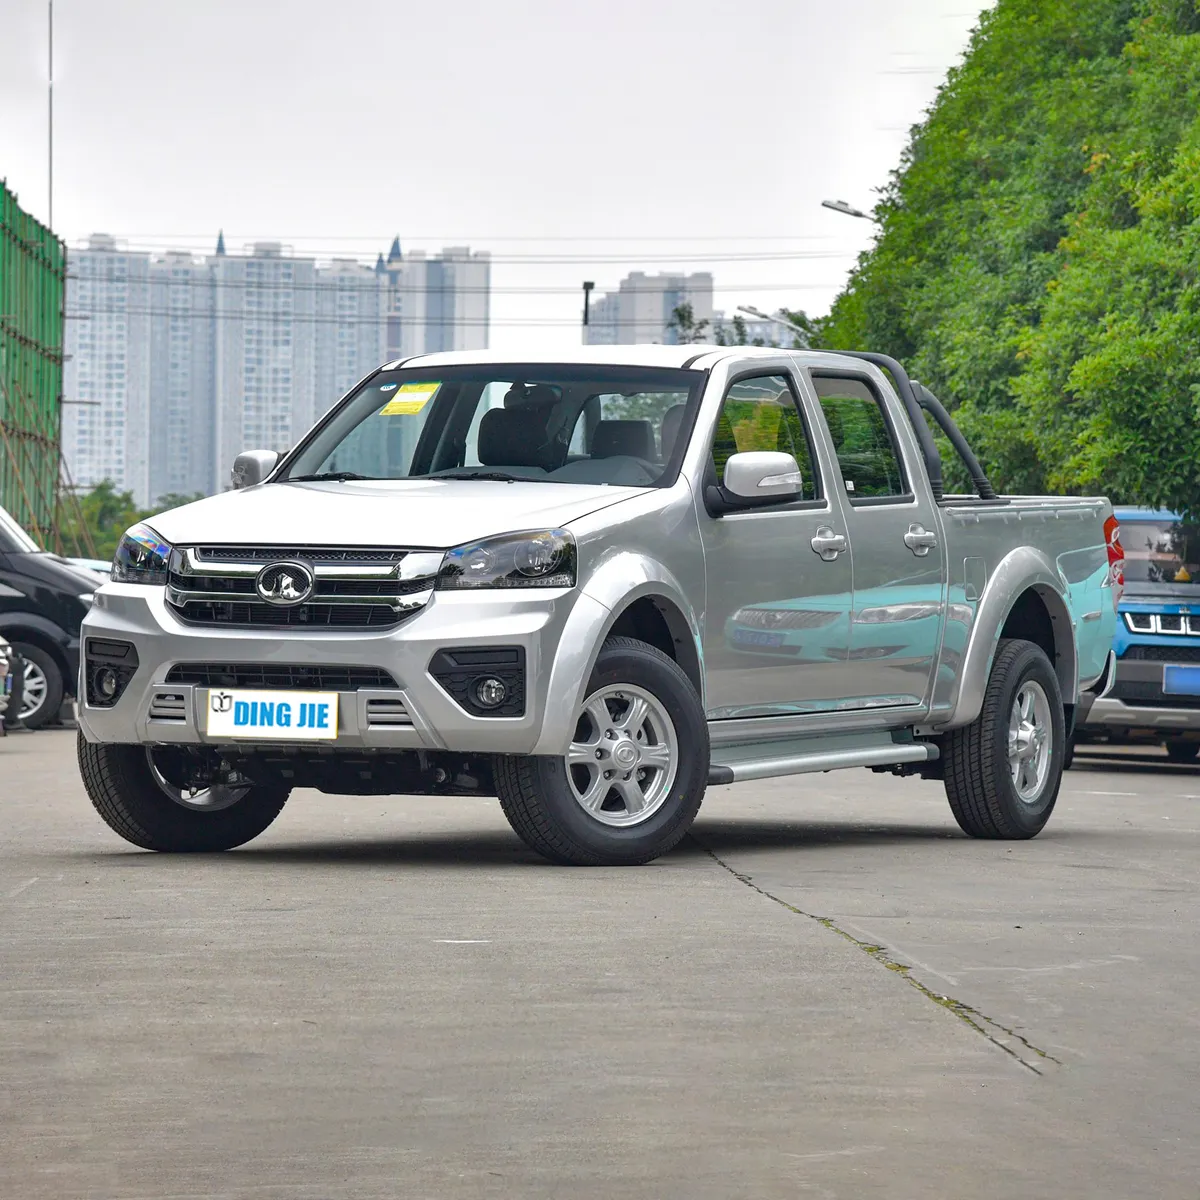 2023 Cina Changcheng dinding besar Fengjun 5 truk Pickup 1.5T L4 Turbo Diesel bensin 4x4 RWD harga rendah kondisi baru kiri FWD